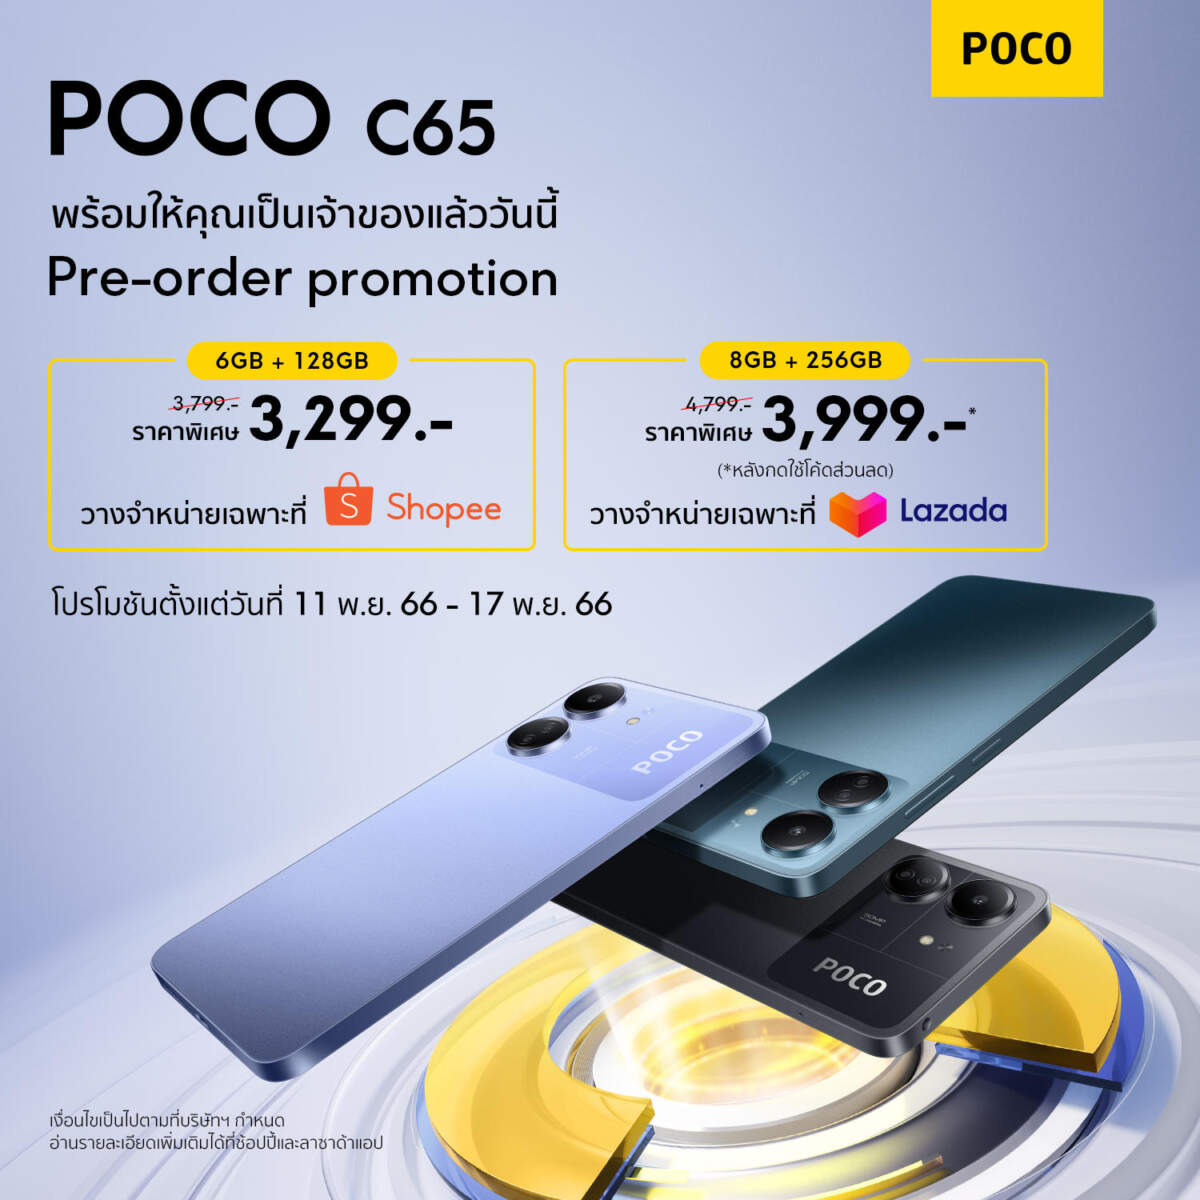 POCO C65 เปิดตัวในไทยแล้ว ในราคาเริ่มต้น 3,799 บาท